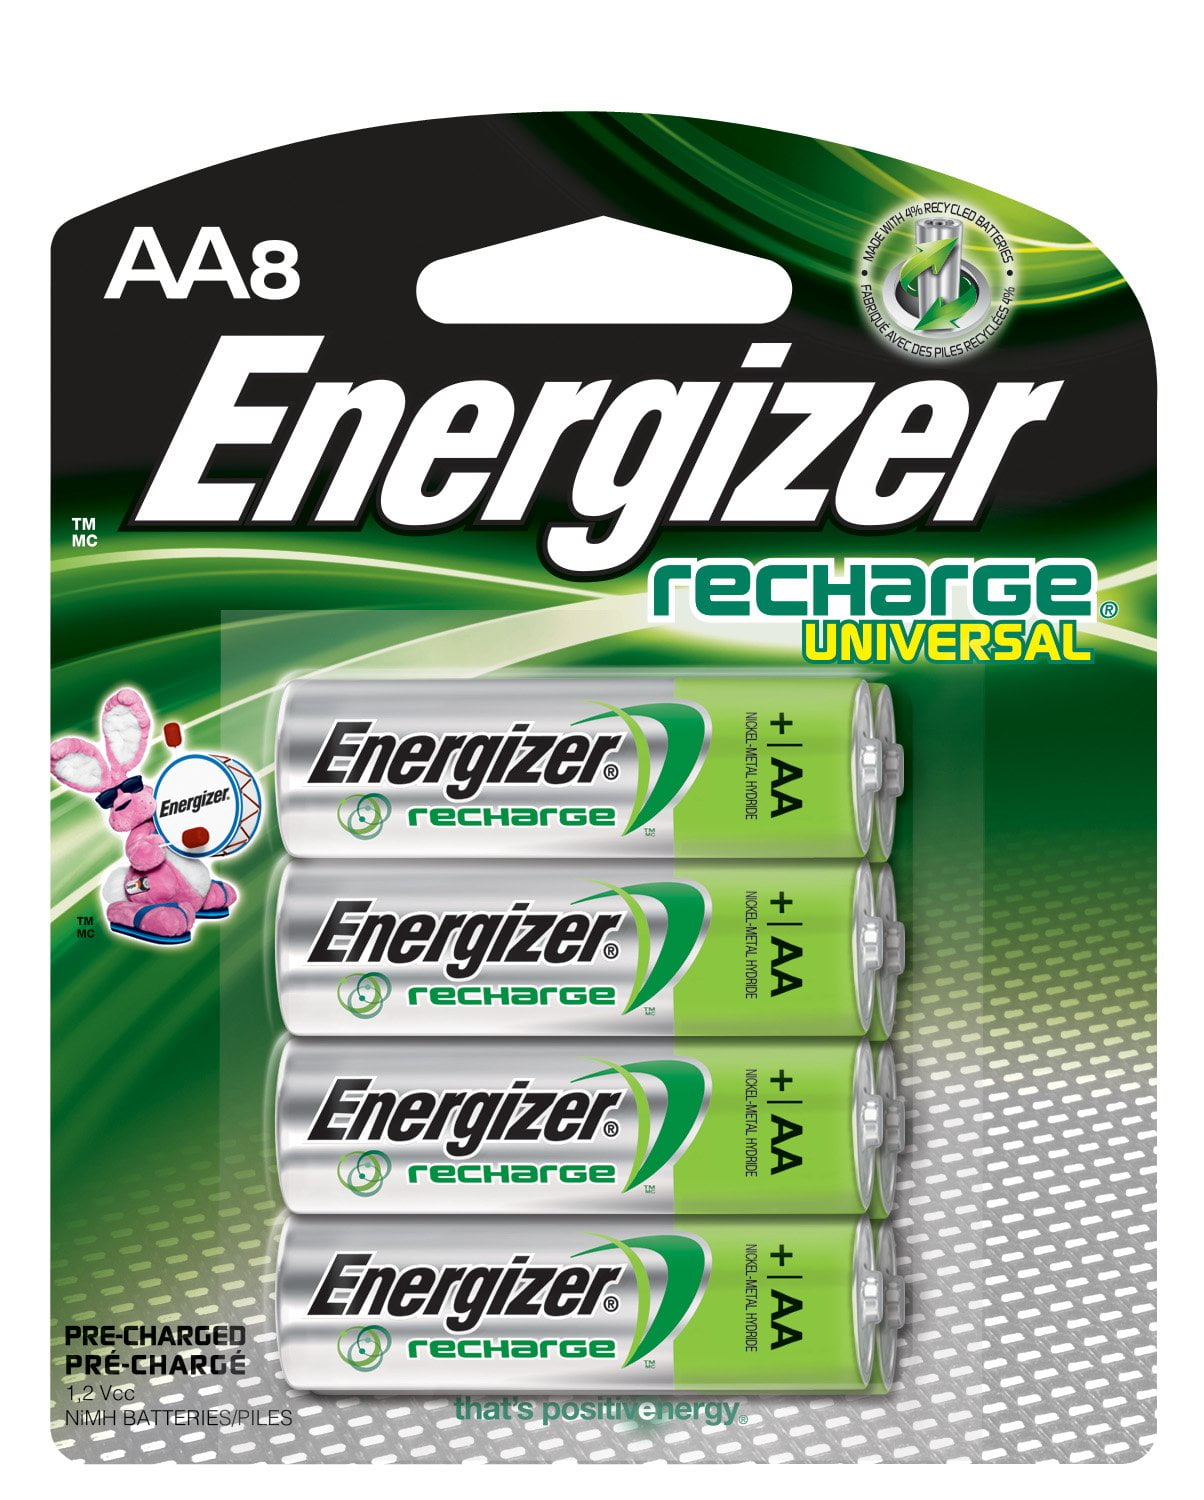 Ligatie haat Baars Energizer Rechargeable AA Batteries, NiMH, 2000 mAh, Pre-Charged, 8 count  (Recharge Universal) - Walmart.com